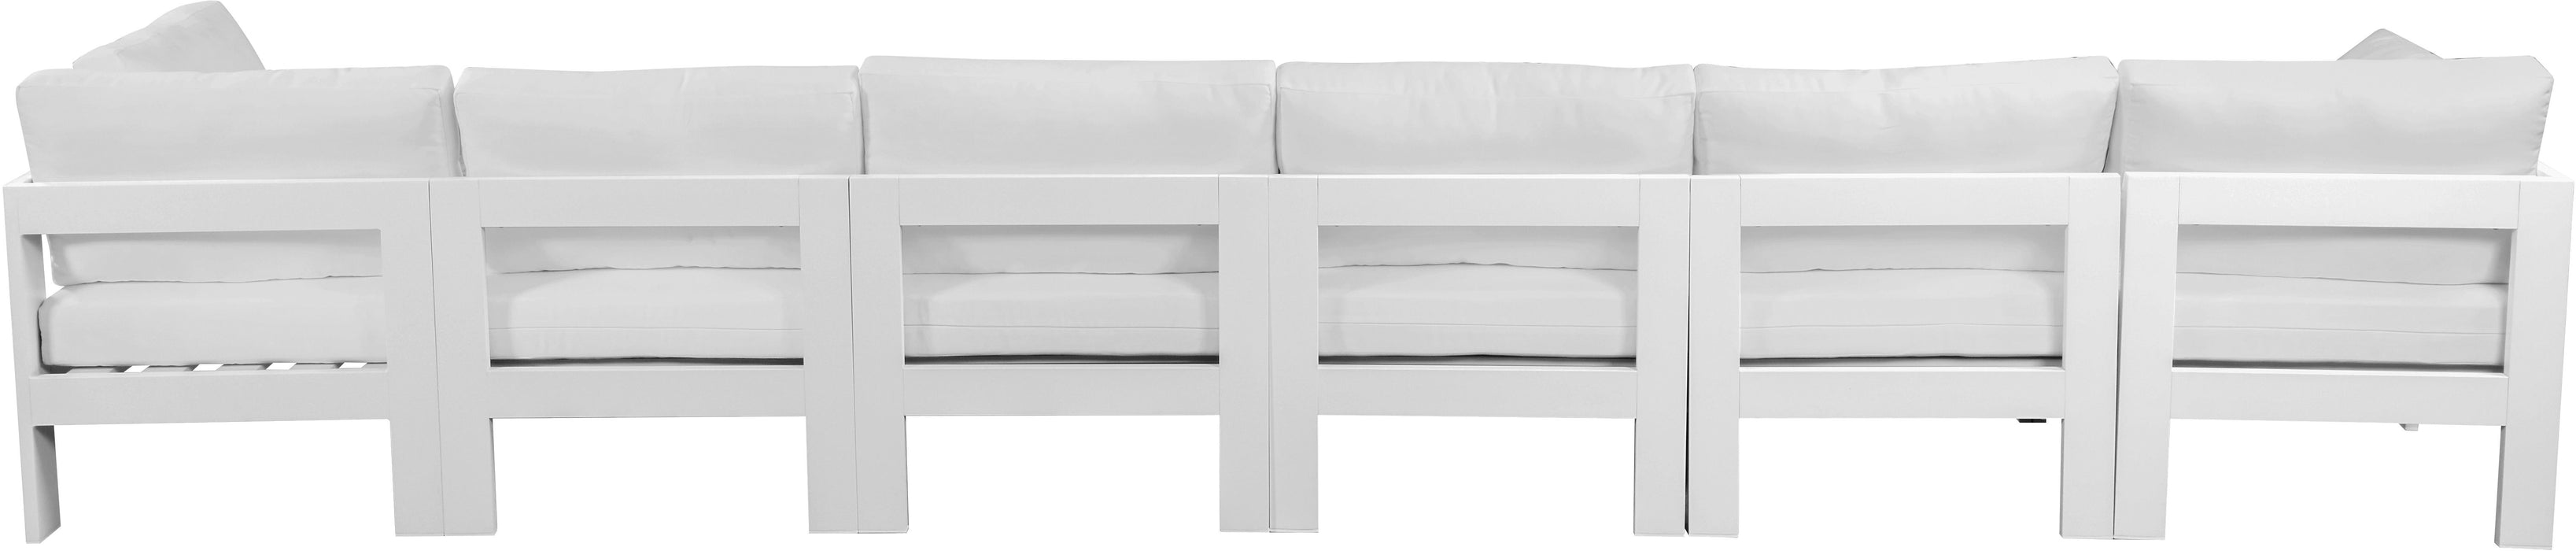 Nizuc - Outdoor Patio Modular Sofa With Frame - White - With Frame